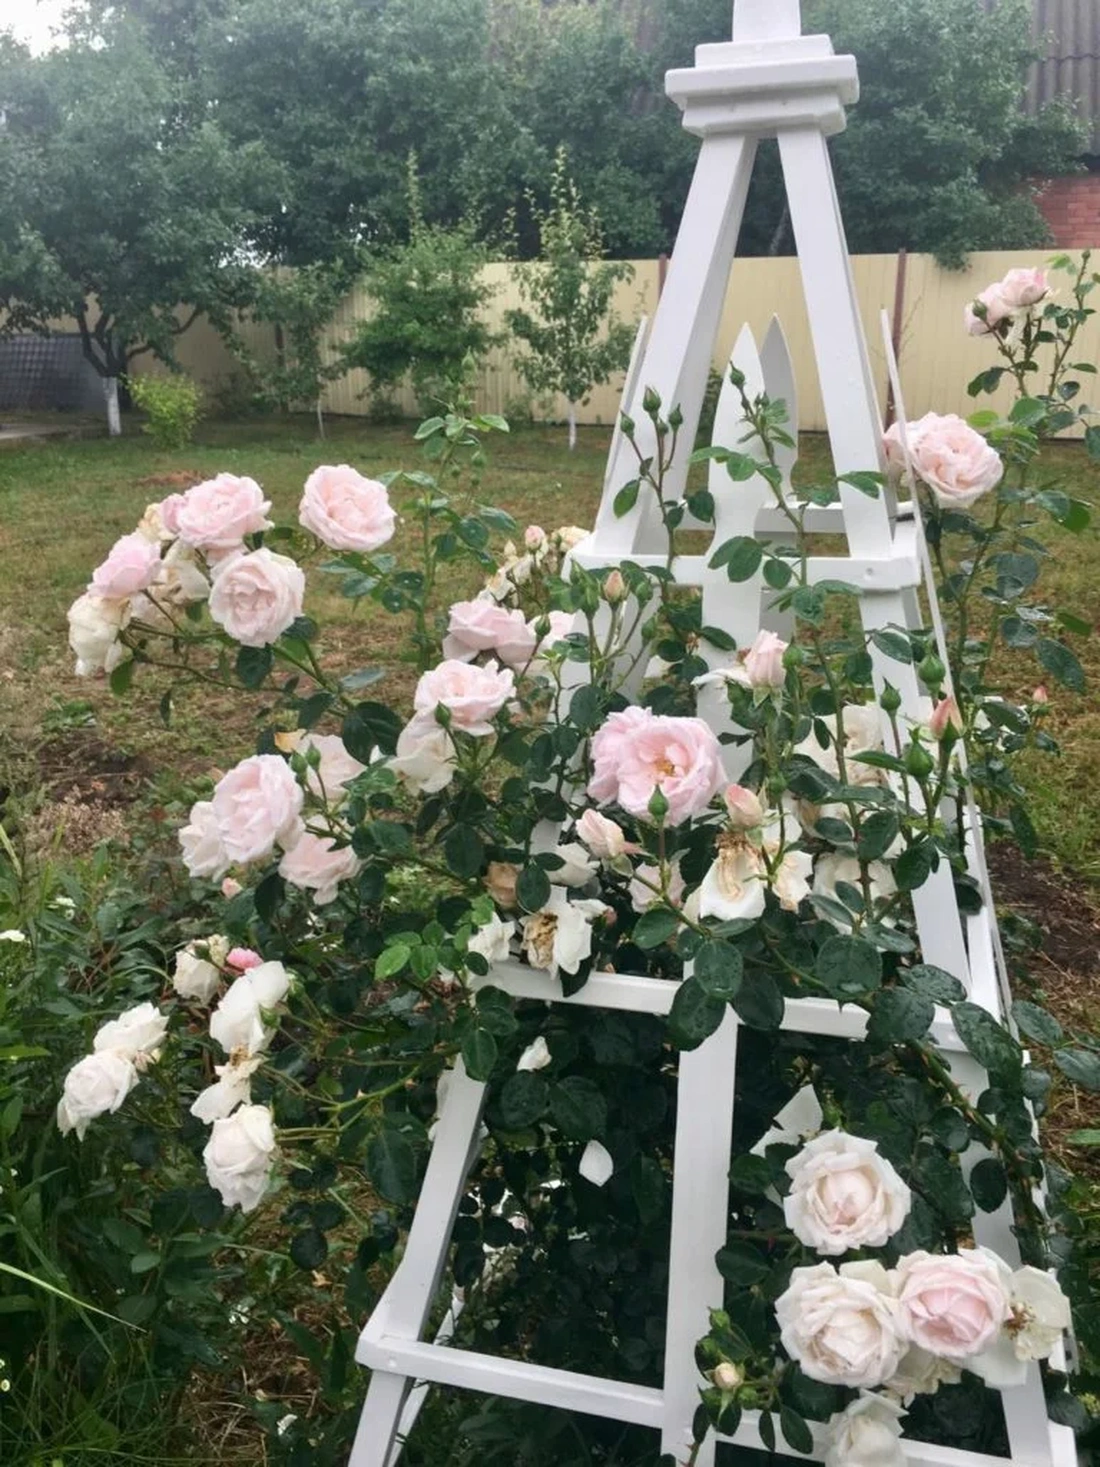 В оформлении романтического сада лучше использовать вьющиеся розы кремово-розовой, светло-желтой или бледно-розовой окраски.Такая цветовая гамма расслабит и подарит умиротворение.